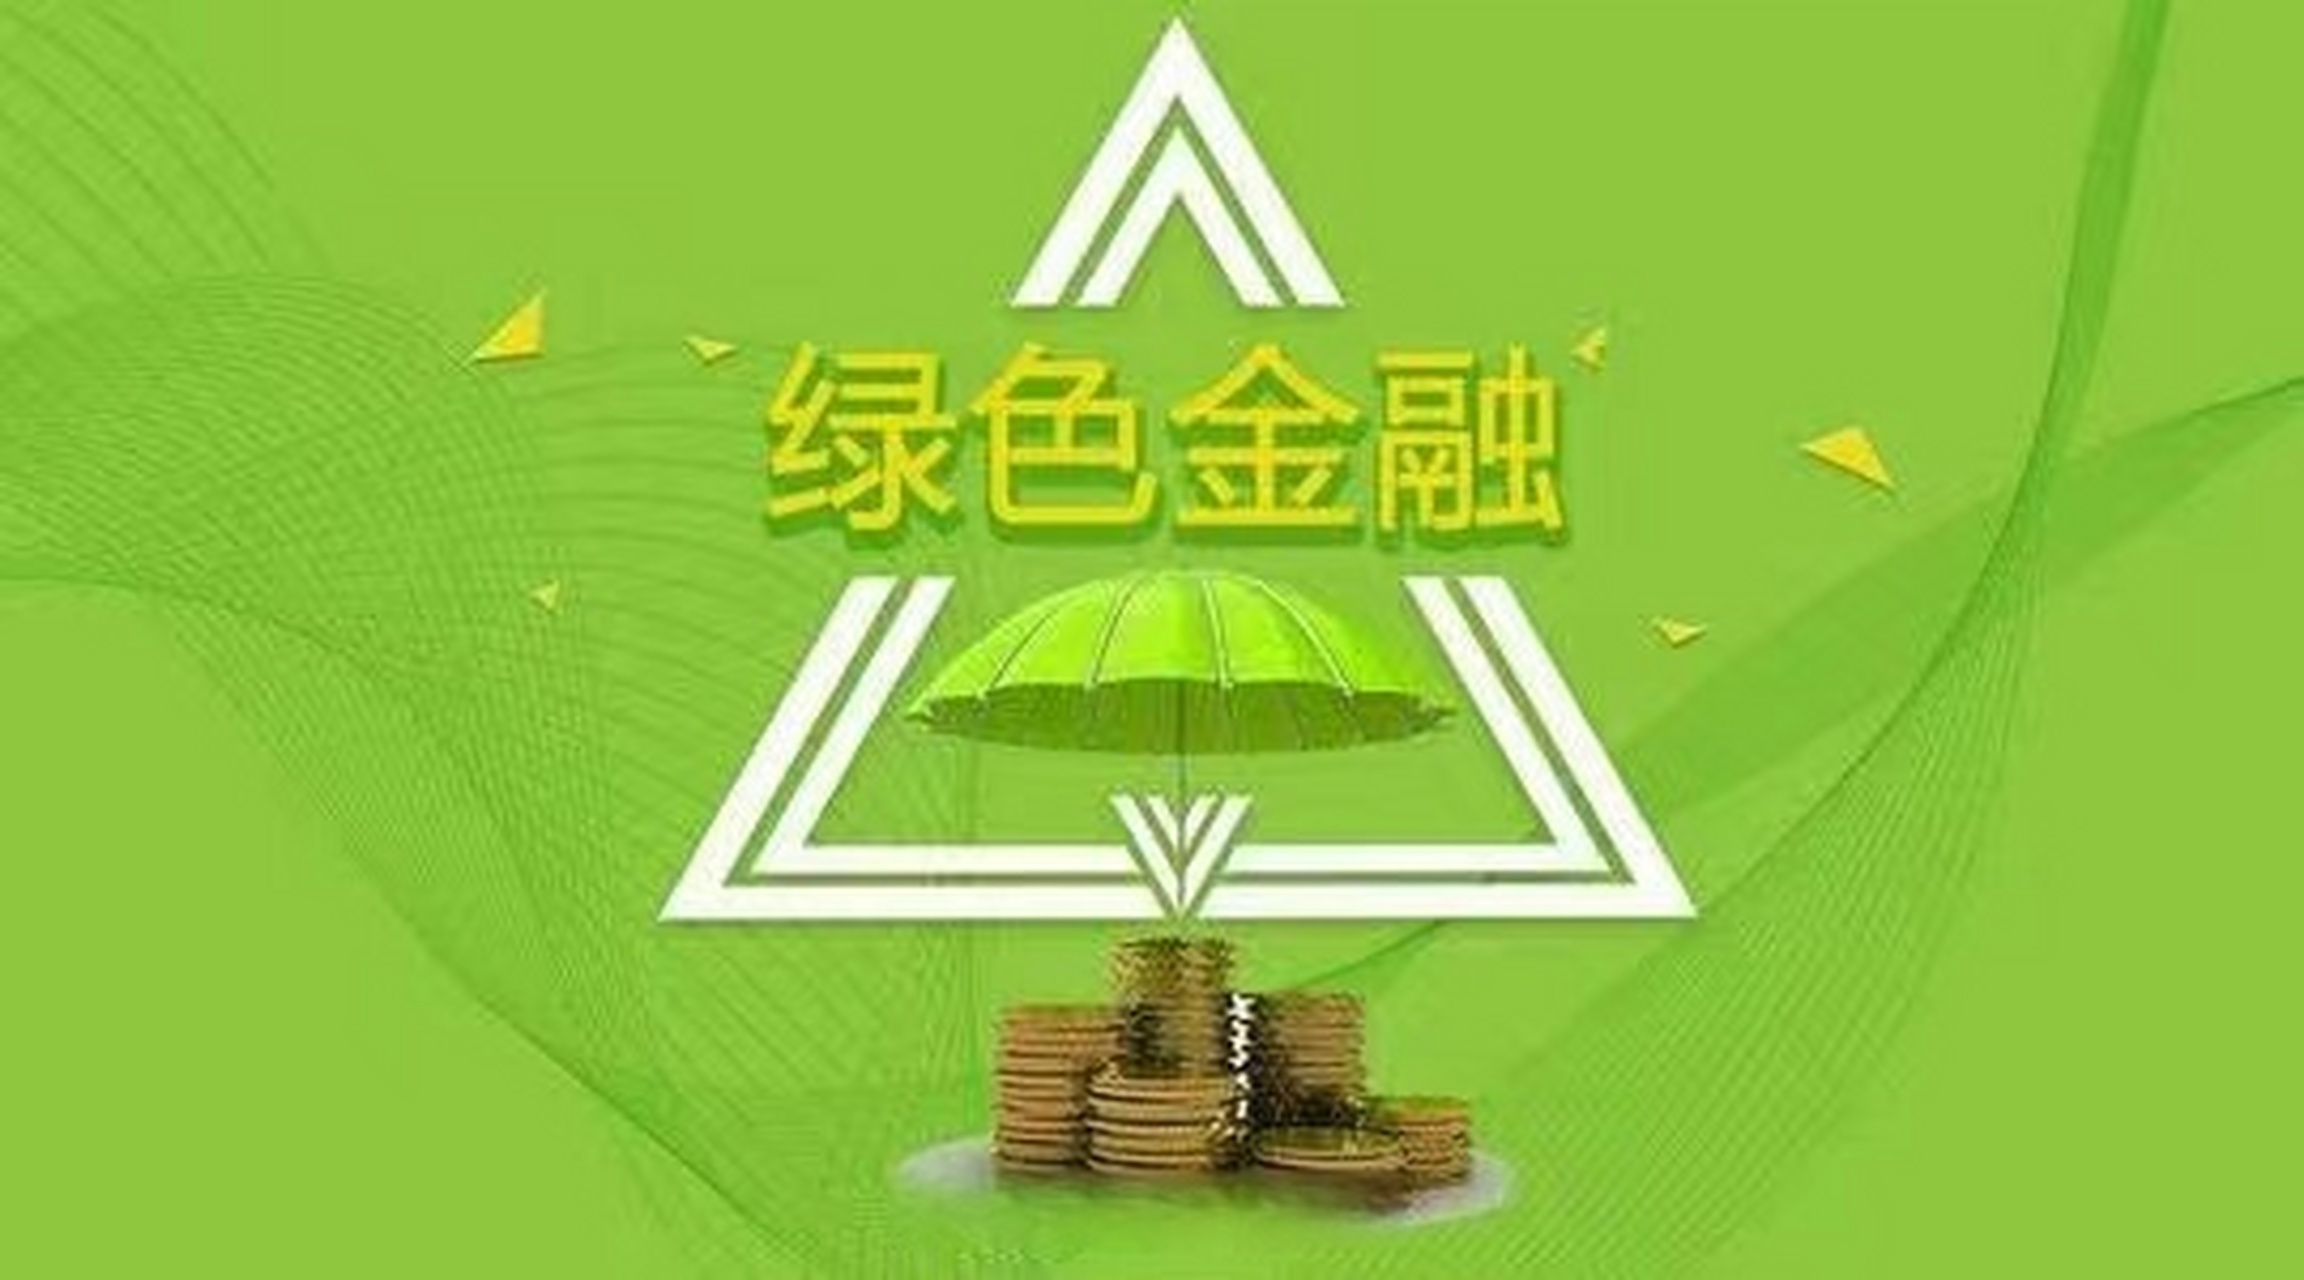 绿色金融 海报图片